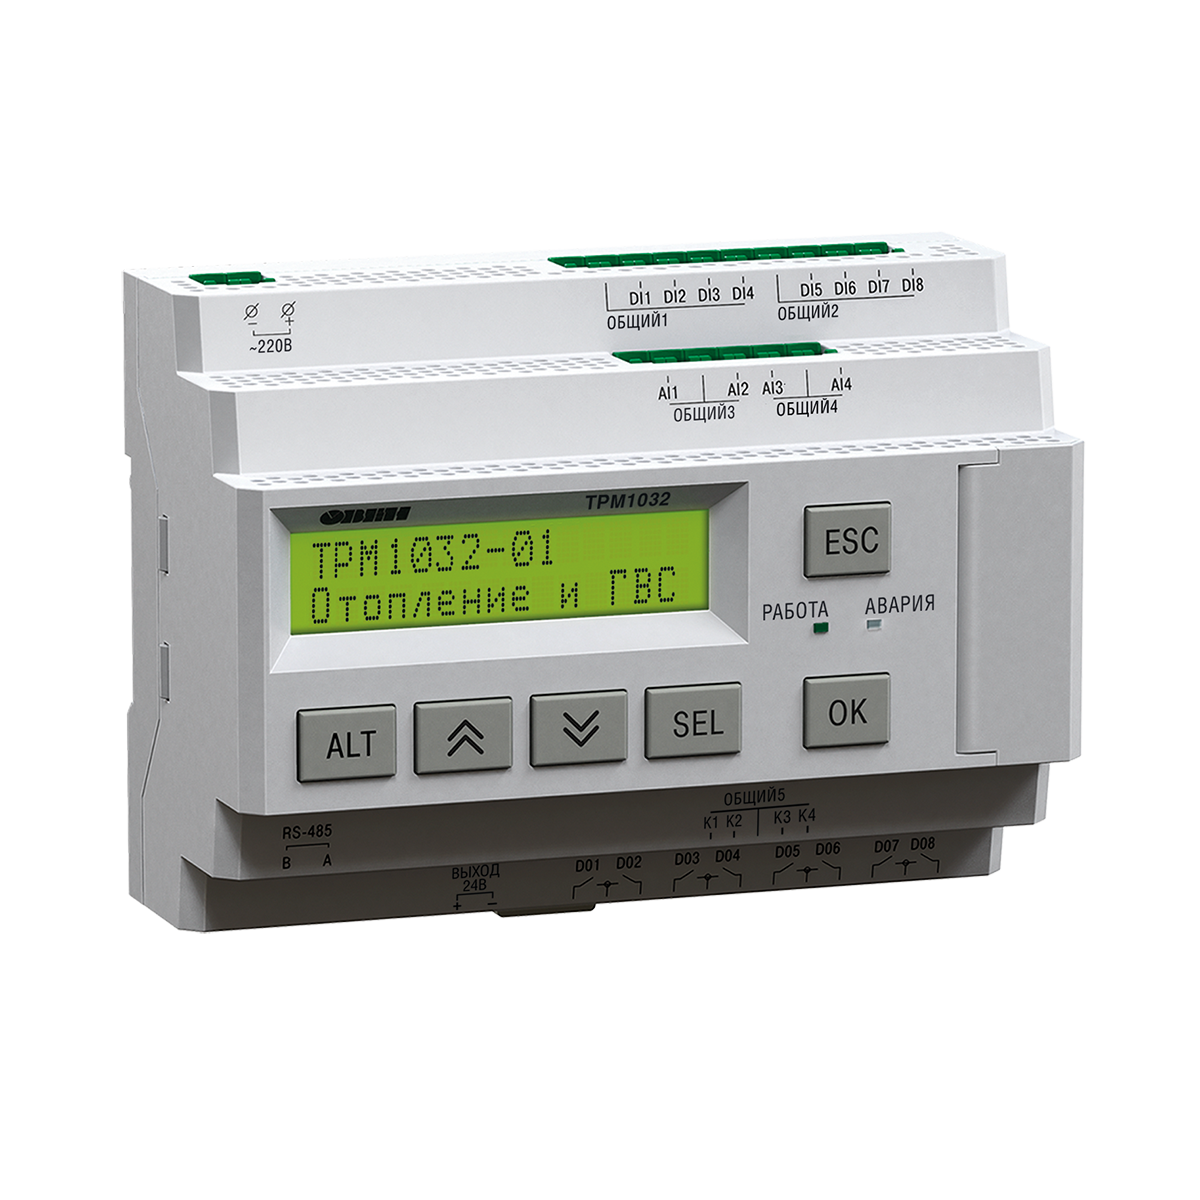 ТРМ1032М-02.10.И – устройство с готовой логикой для автоматизации контуров отопления и ГВС в ИТП/ЦТП.